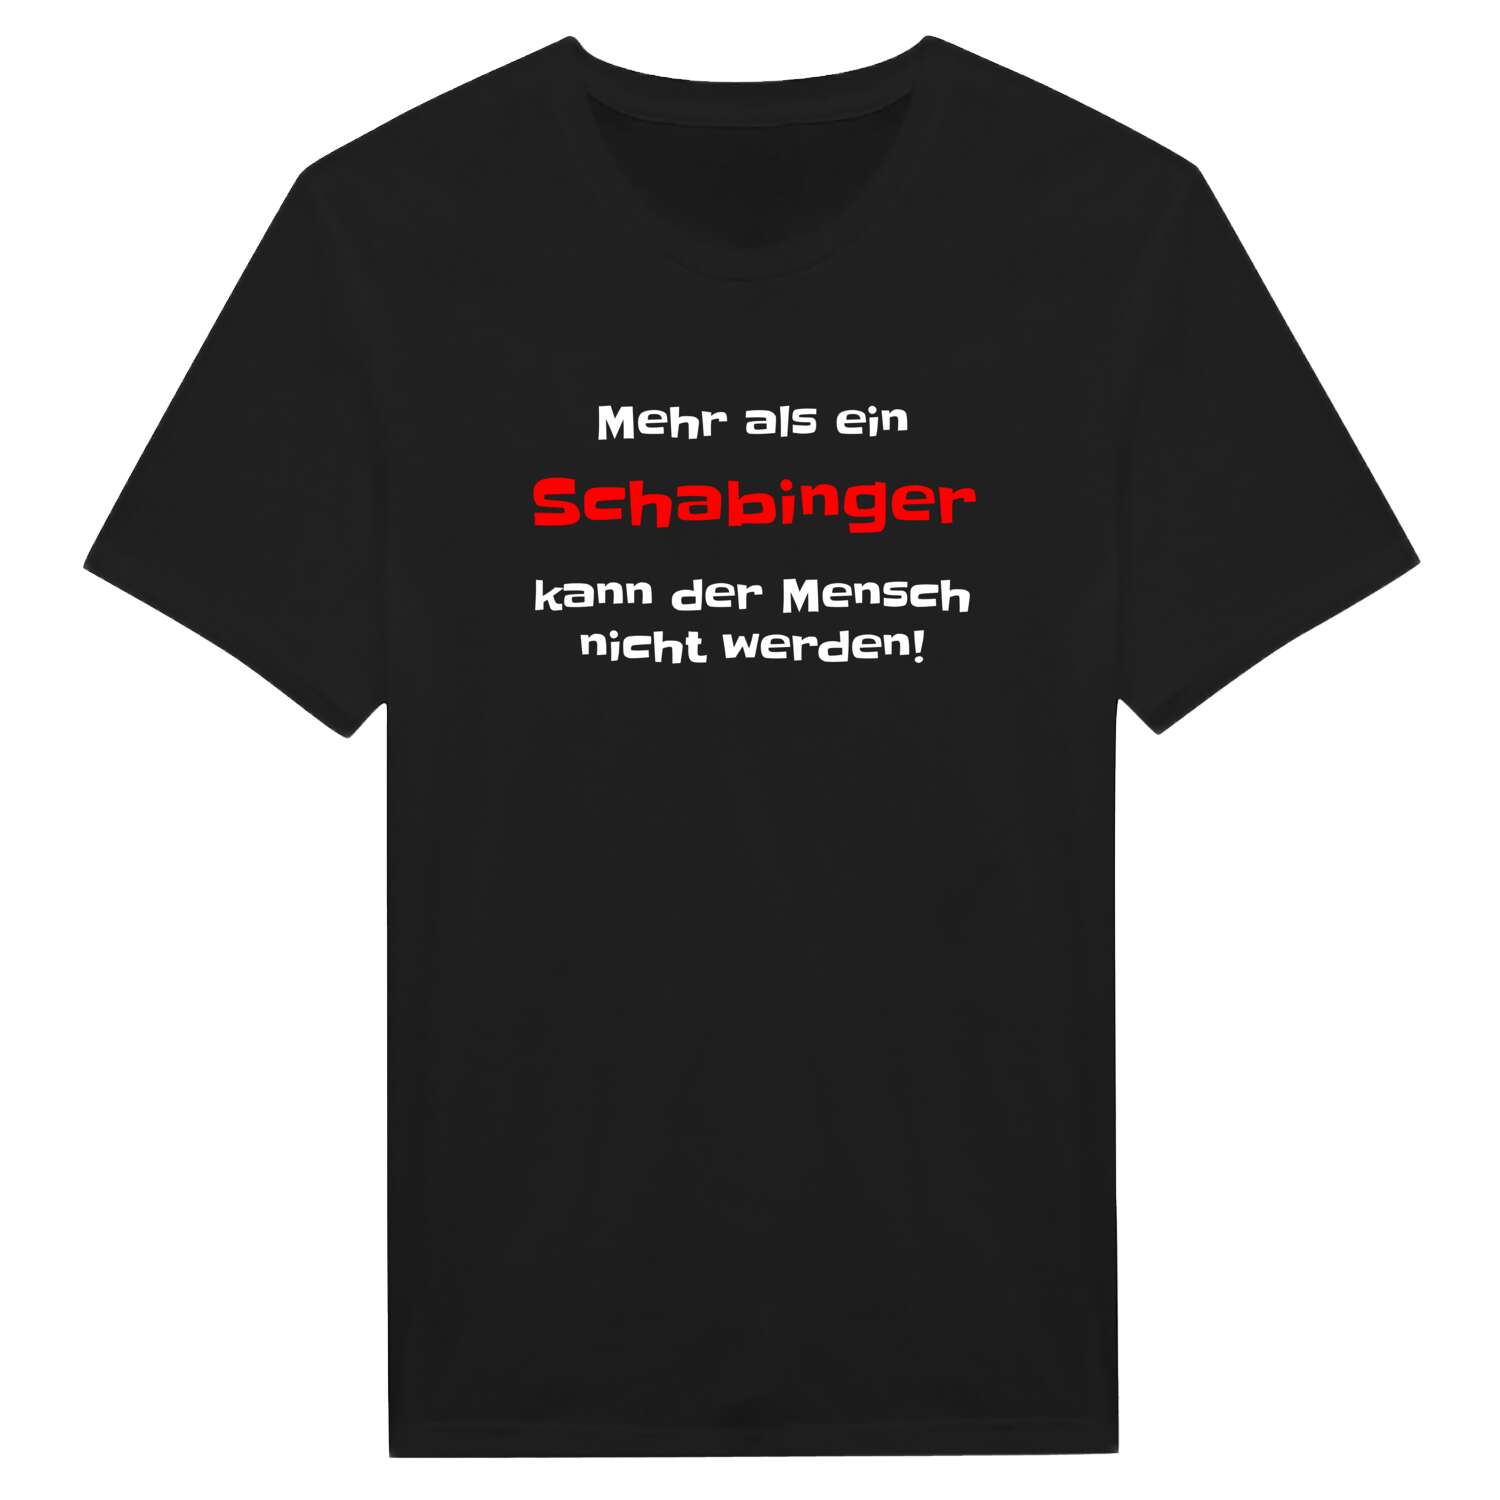 Schabing T-Shirt »Mehr als ein«